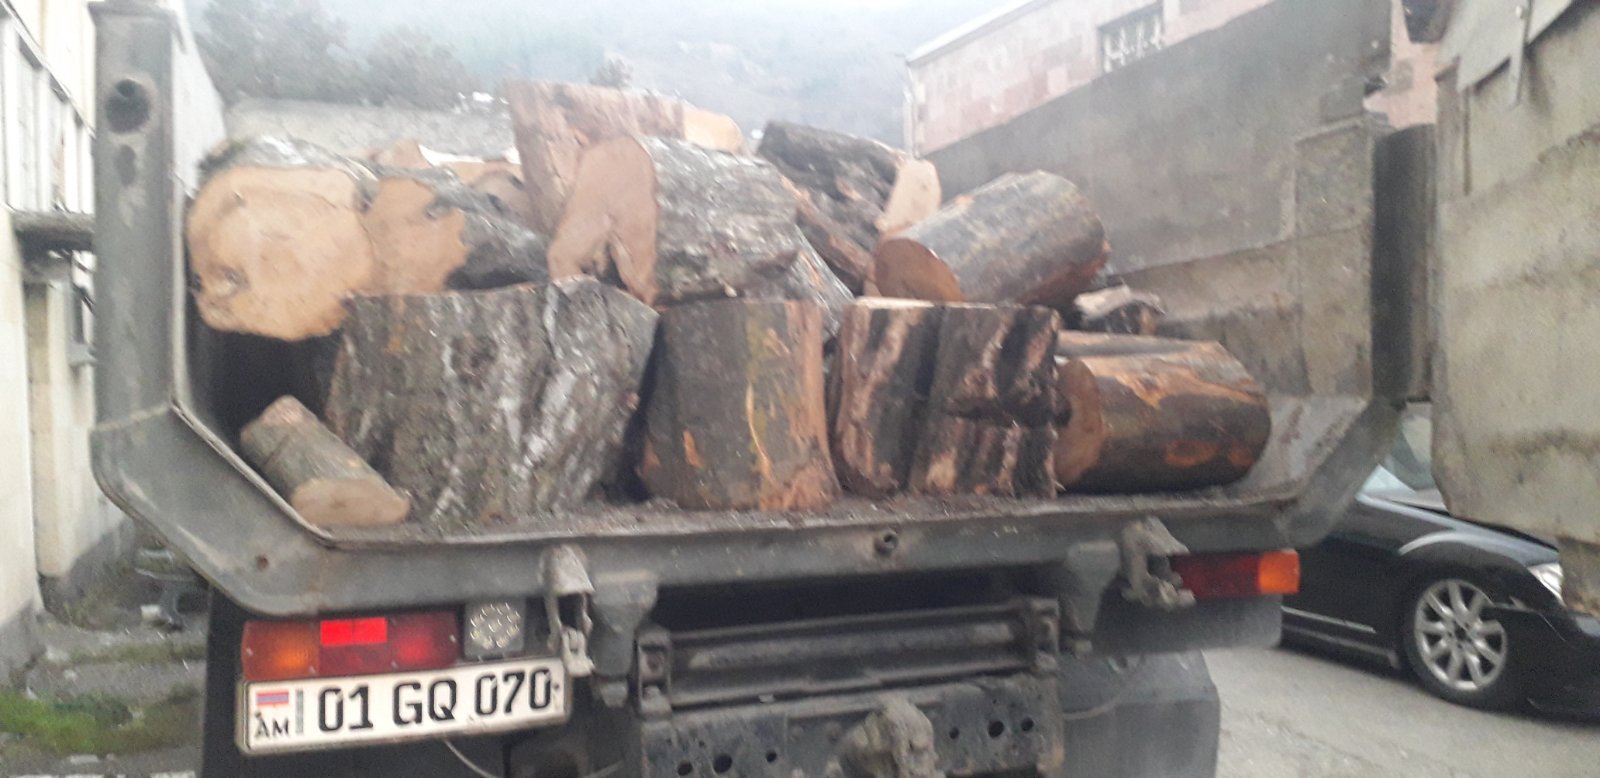 Տավուշի մարզում հայտնաբերվել է ապօրինի փայտանյութ տեղափոխող 4 մեքենա